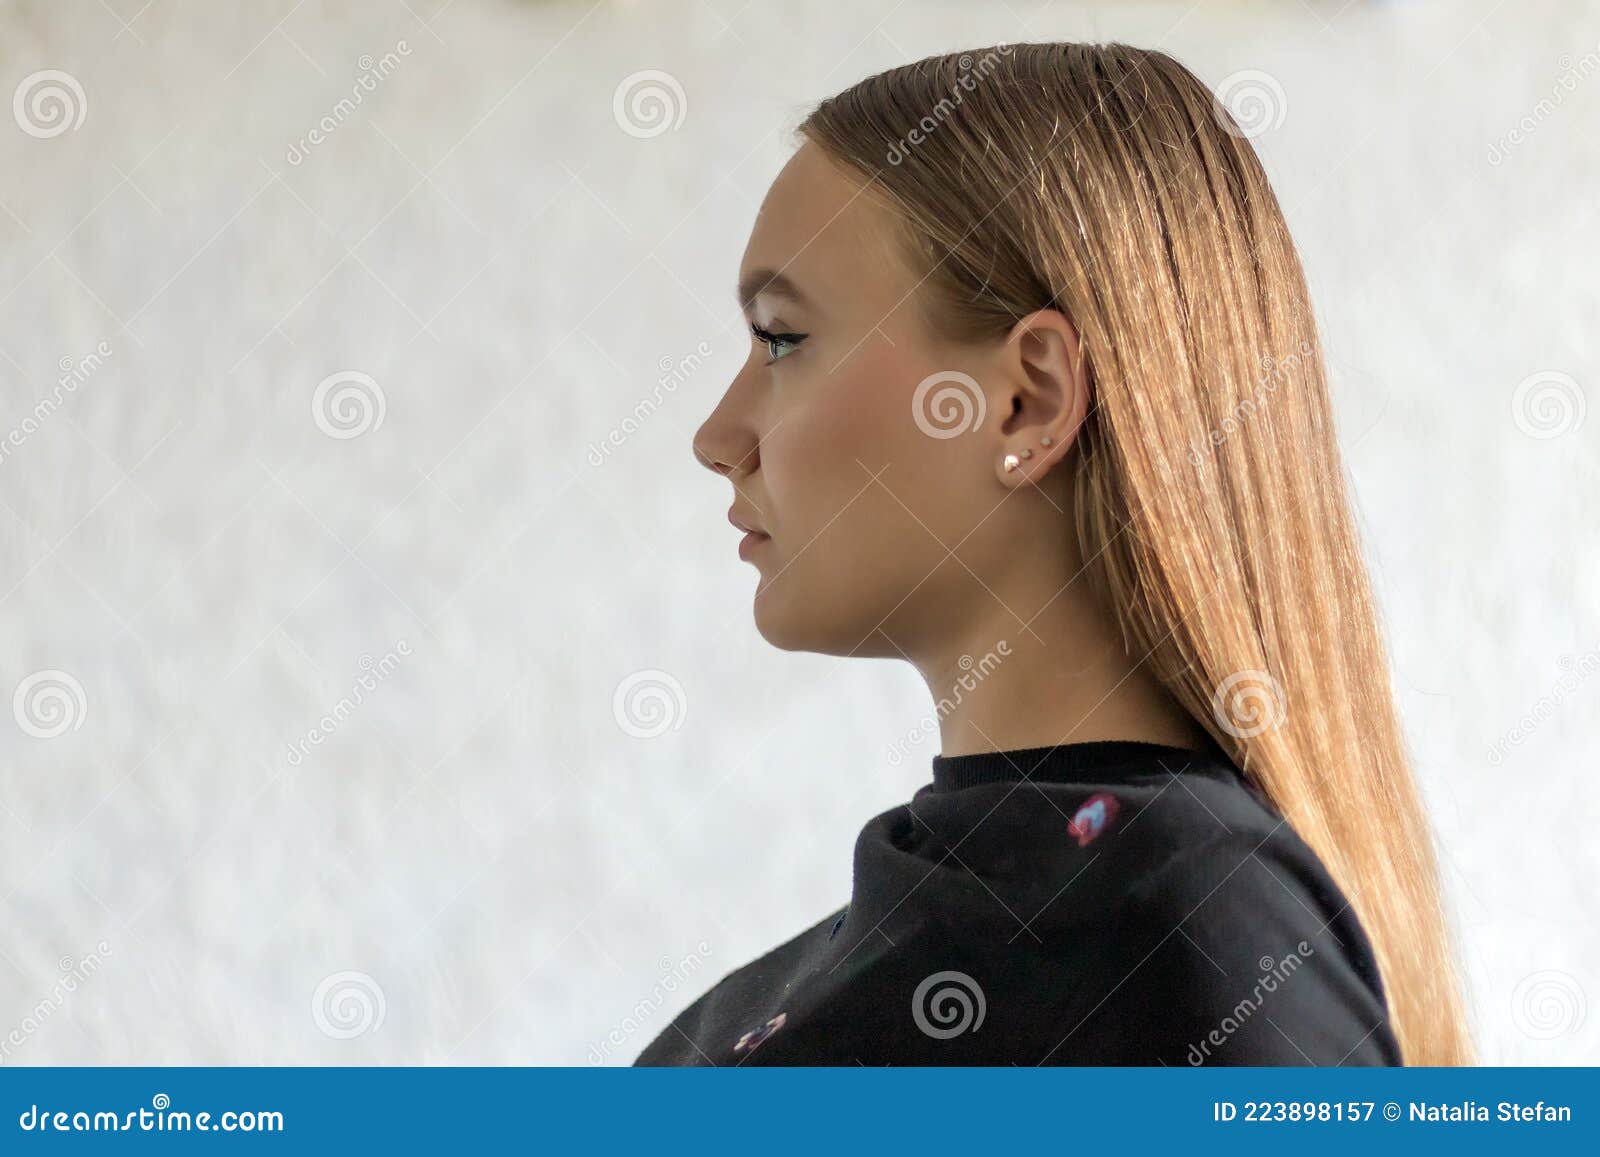 portrait-profile-teenage-girl-brunette-european-years-old-dark-long-hair-indoor-223898157.jpg